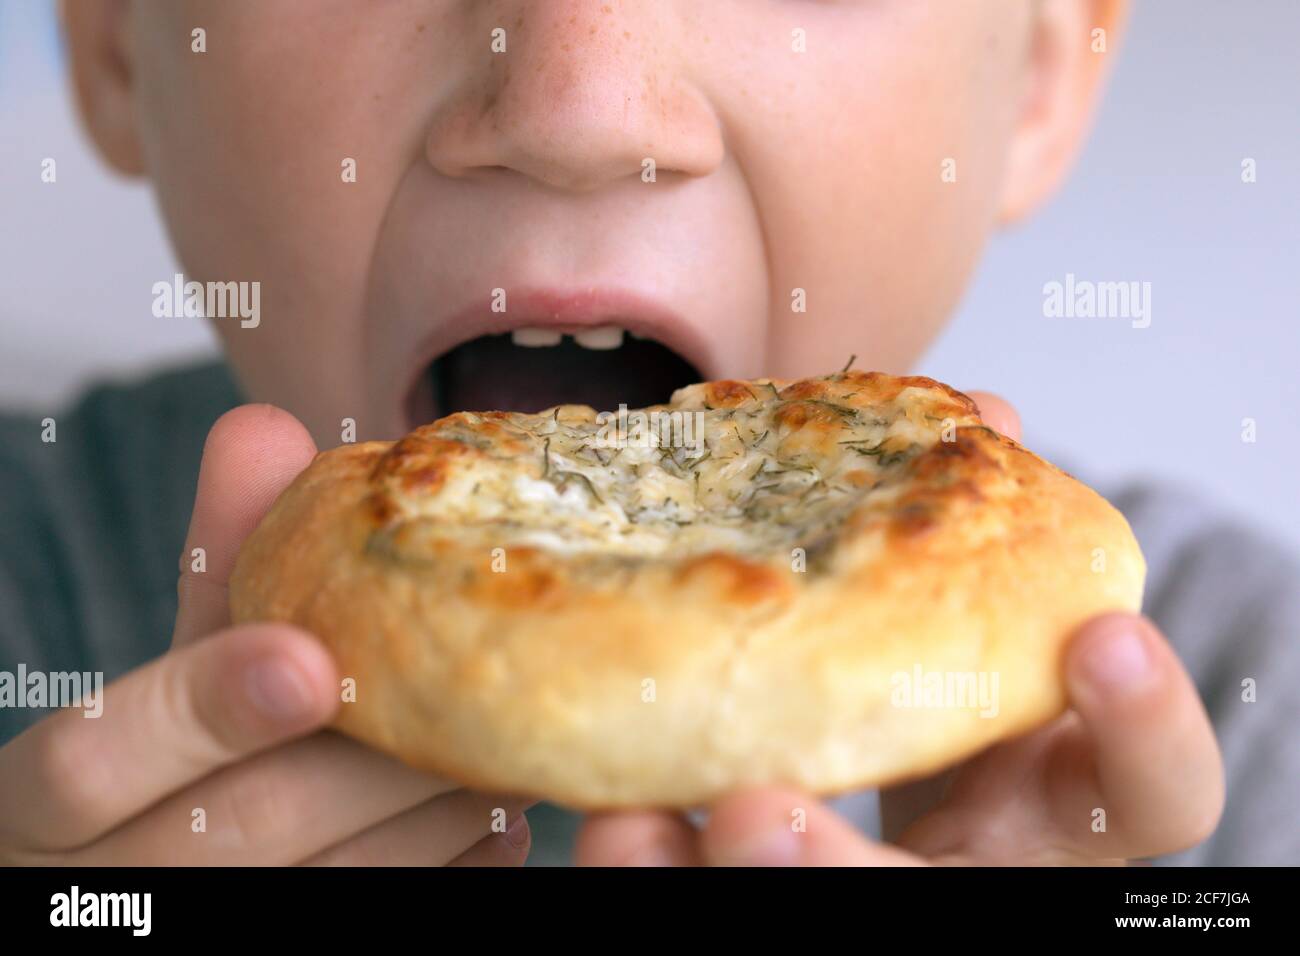 Vue rapprochée d'un garçon mangeant un beignet. Enfant mangeant de la nourriture de restauration rapide malsaine. Le problème est l'obésité infantile Banque D'Images